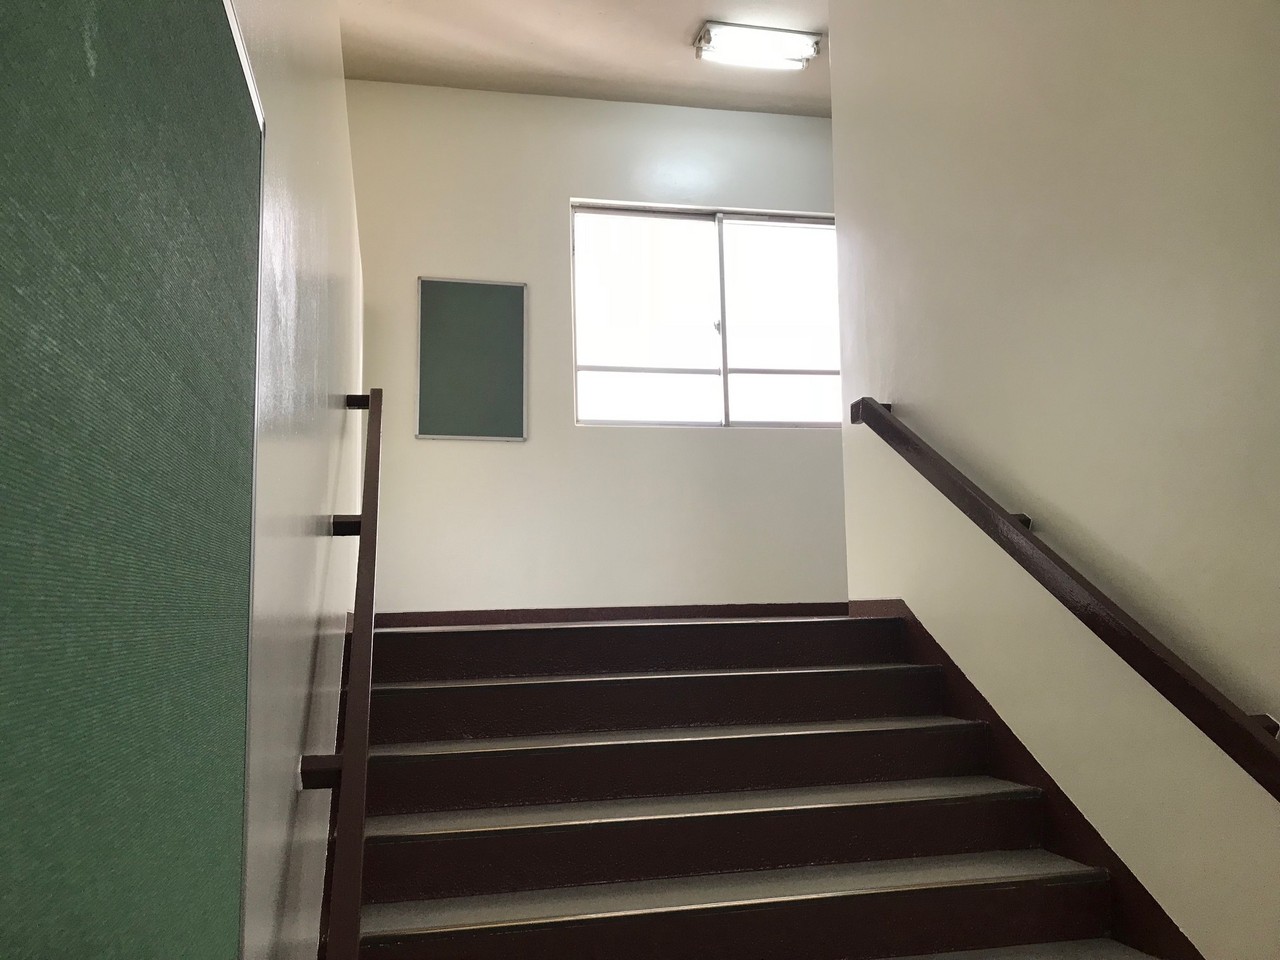 練馬区内中学校階段室塗装工事